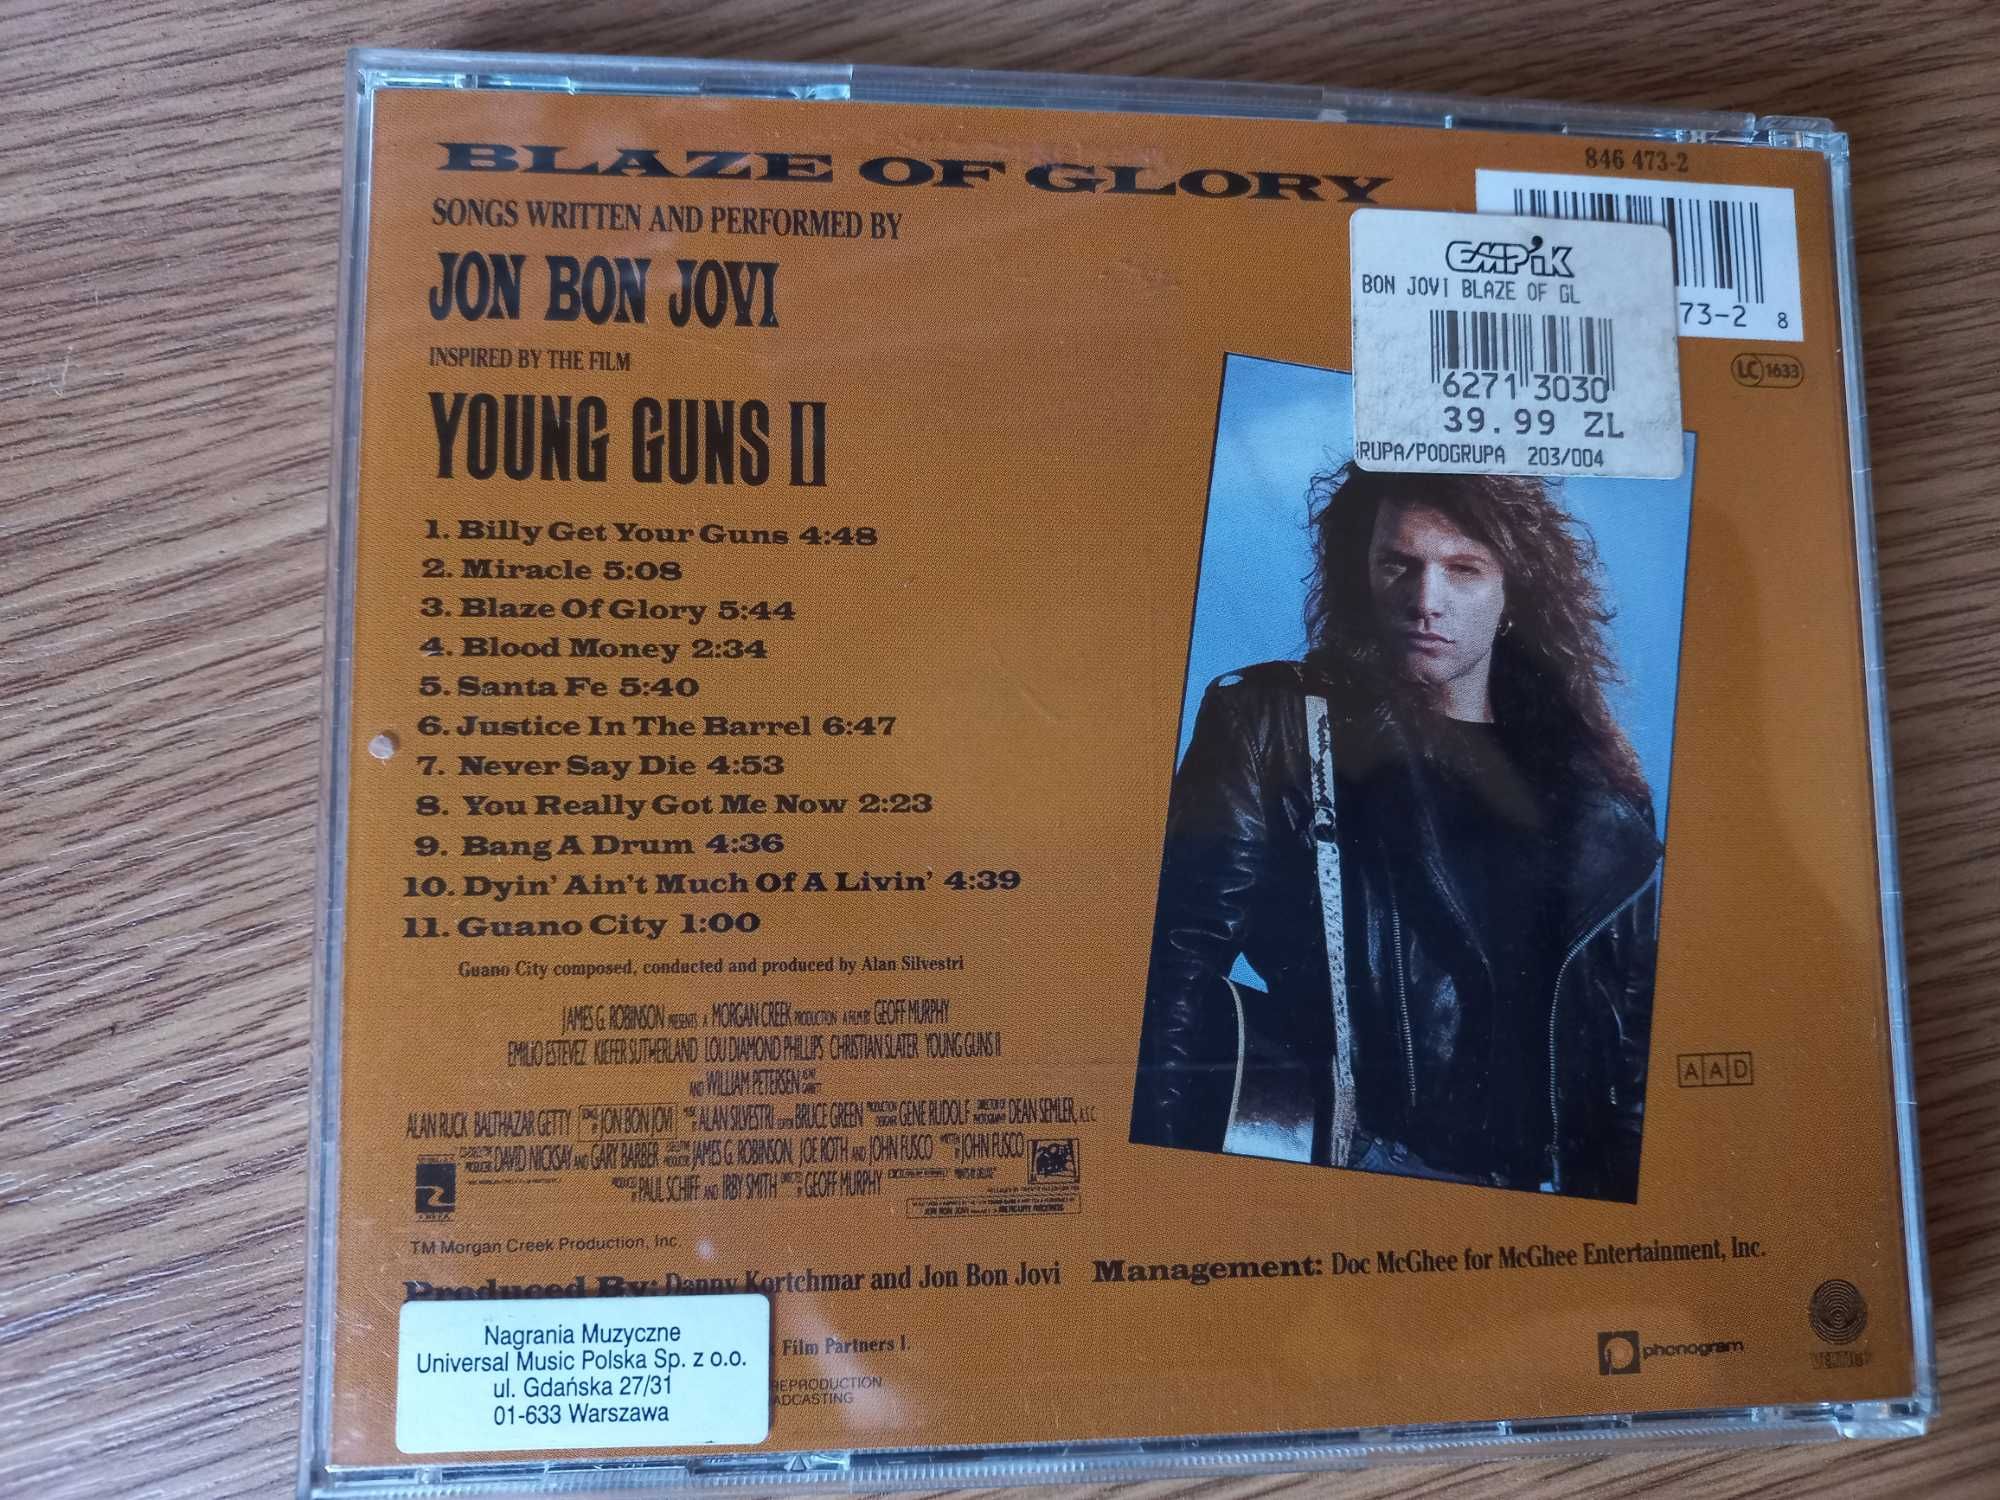 !! przy zakupie 2 płyta CD za 5 zł !! - Bon Jovi, "Blaze of glory"